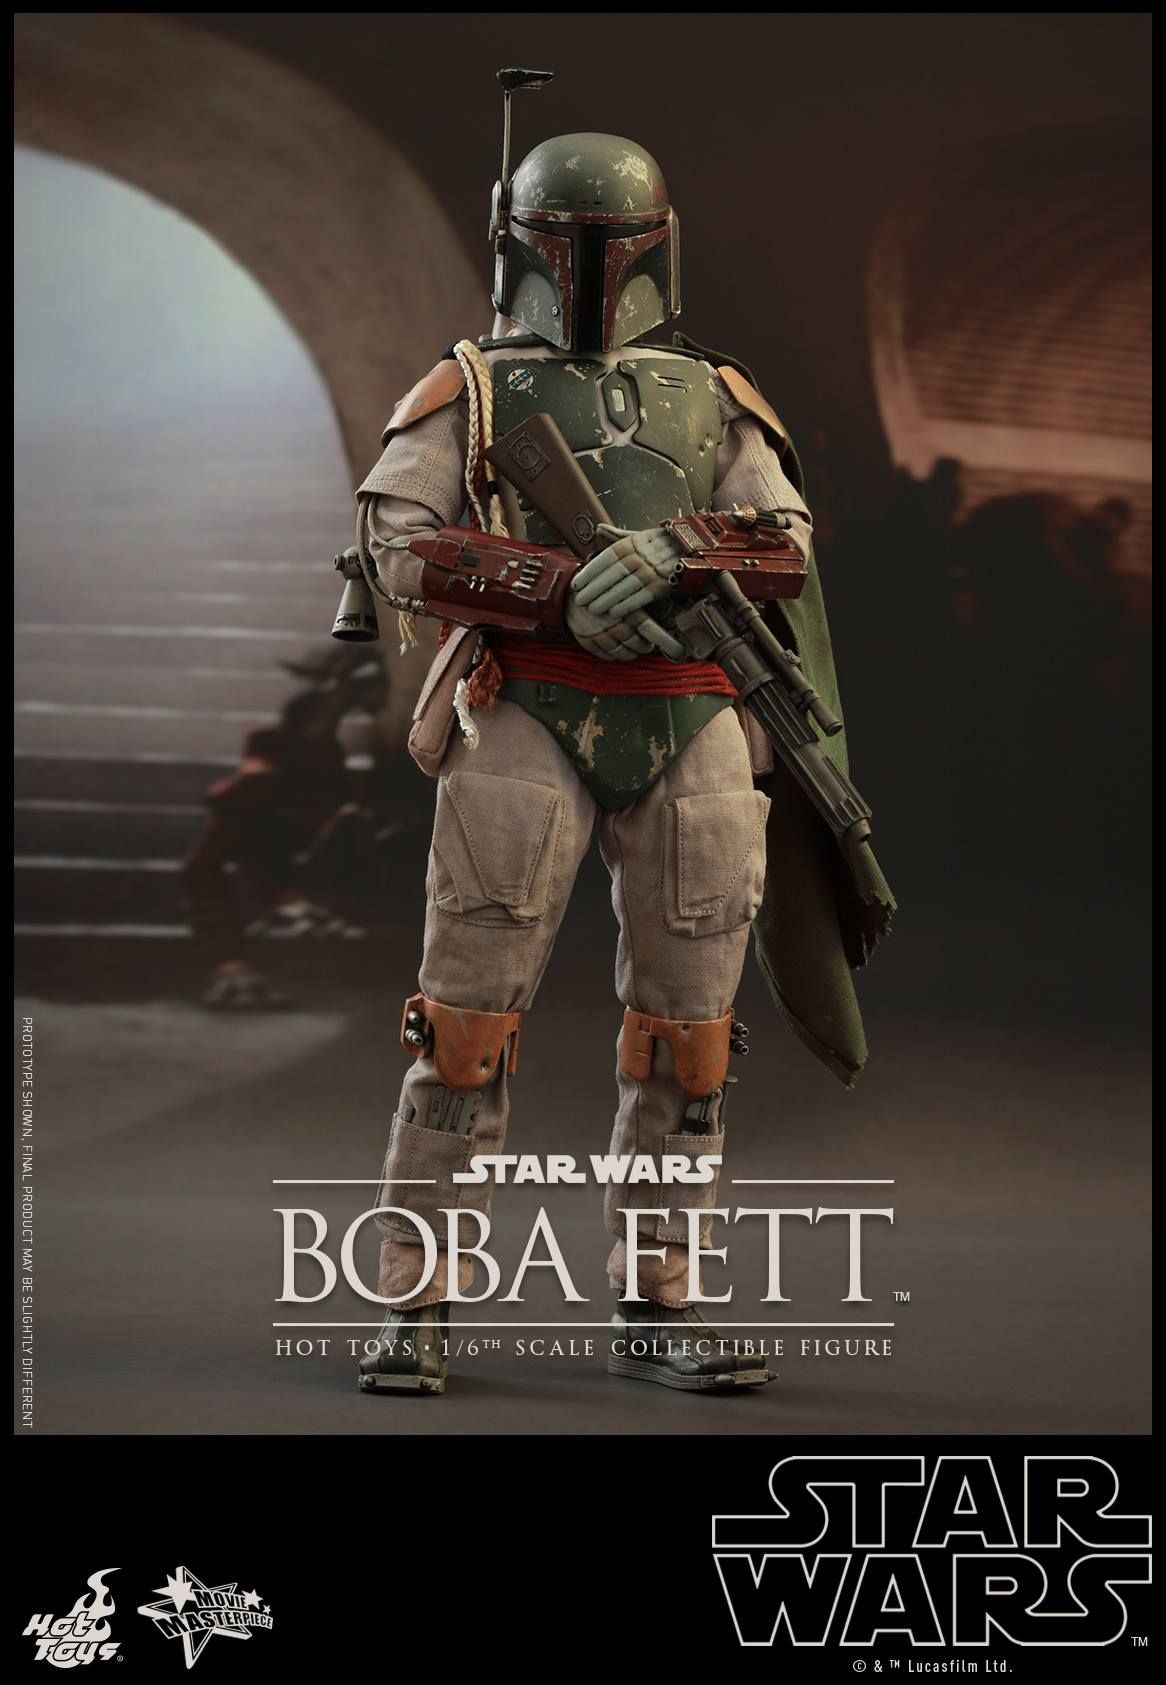 Star Wars Boba Fett Hot Toys Deluxe Figure 18